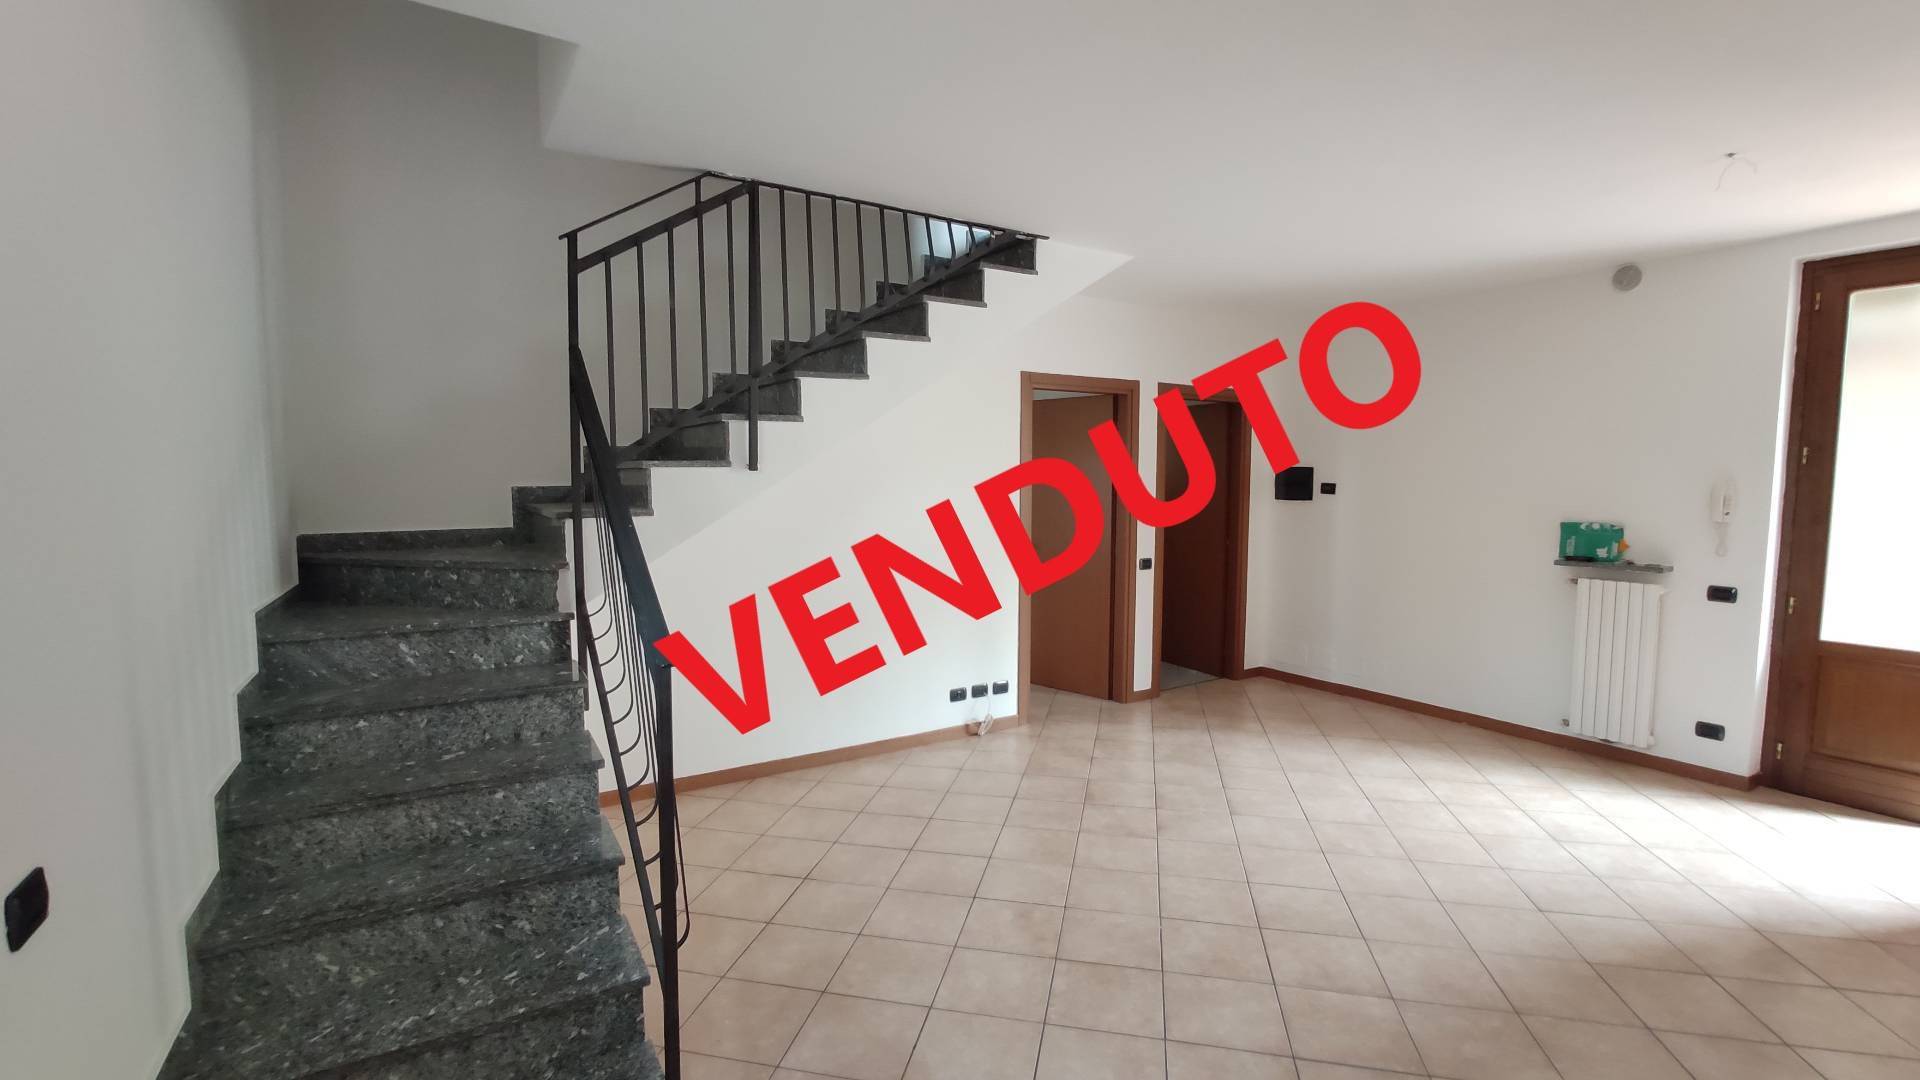 Appartamento in vendita a Terno d'Isola, 4 locali, prezzo € 125.000 | PortaleAgenzieImmobiliari.it